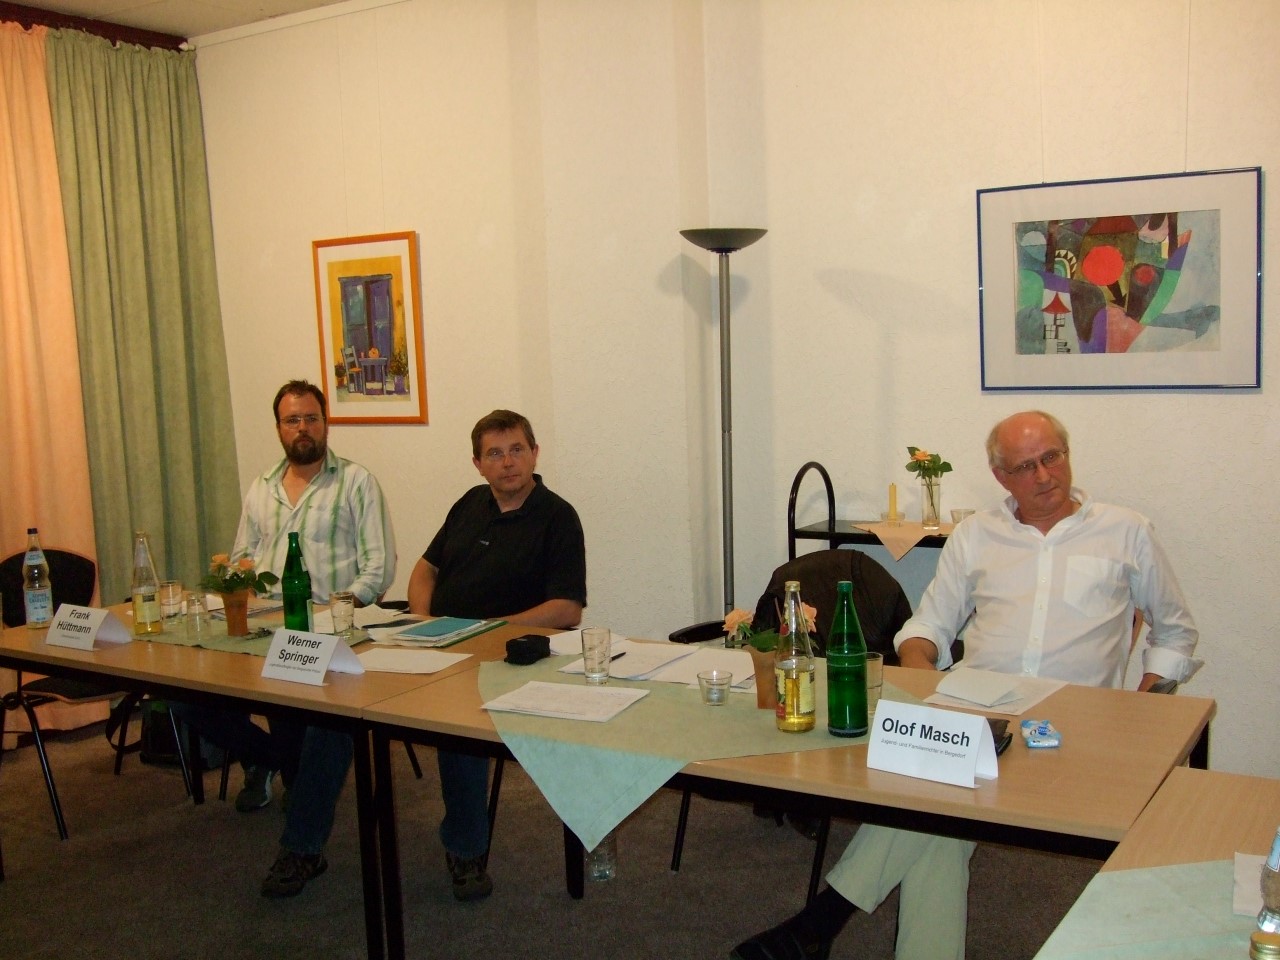 Ralf Hüttmann, Werner Springer und Olof Masch (von links) beim 6. Inländerstammtisch der SPD Bergedorf.